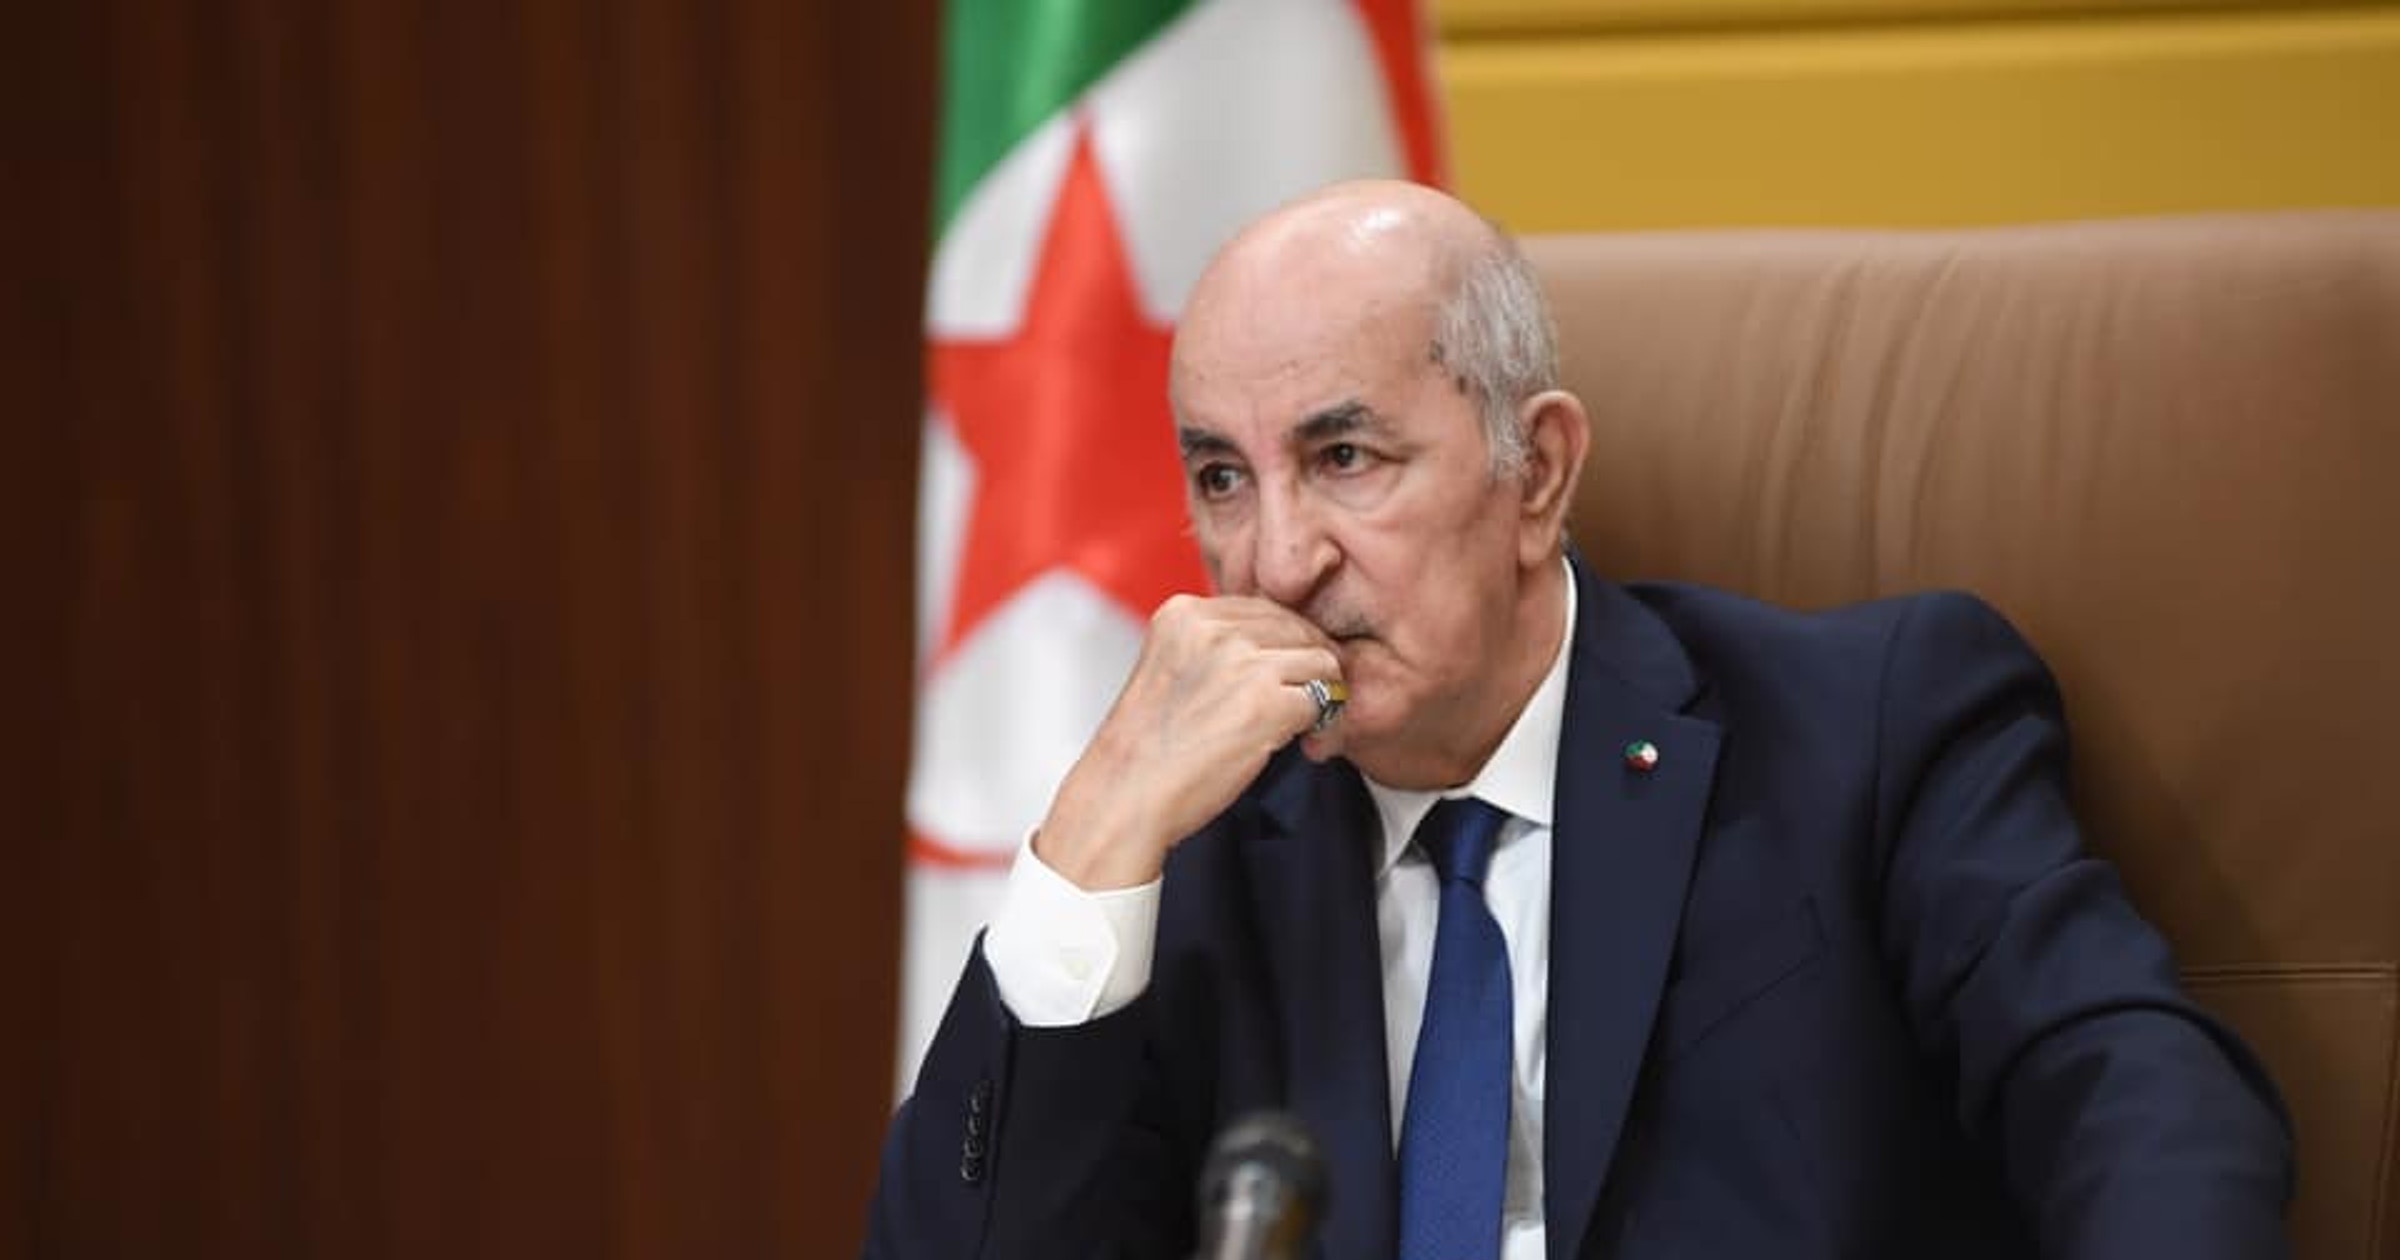 ليكسبريس الفرنسيّة: الجزائر تحس بالمرارة من نجاحات المغرب